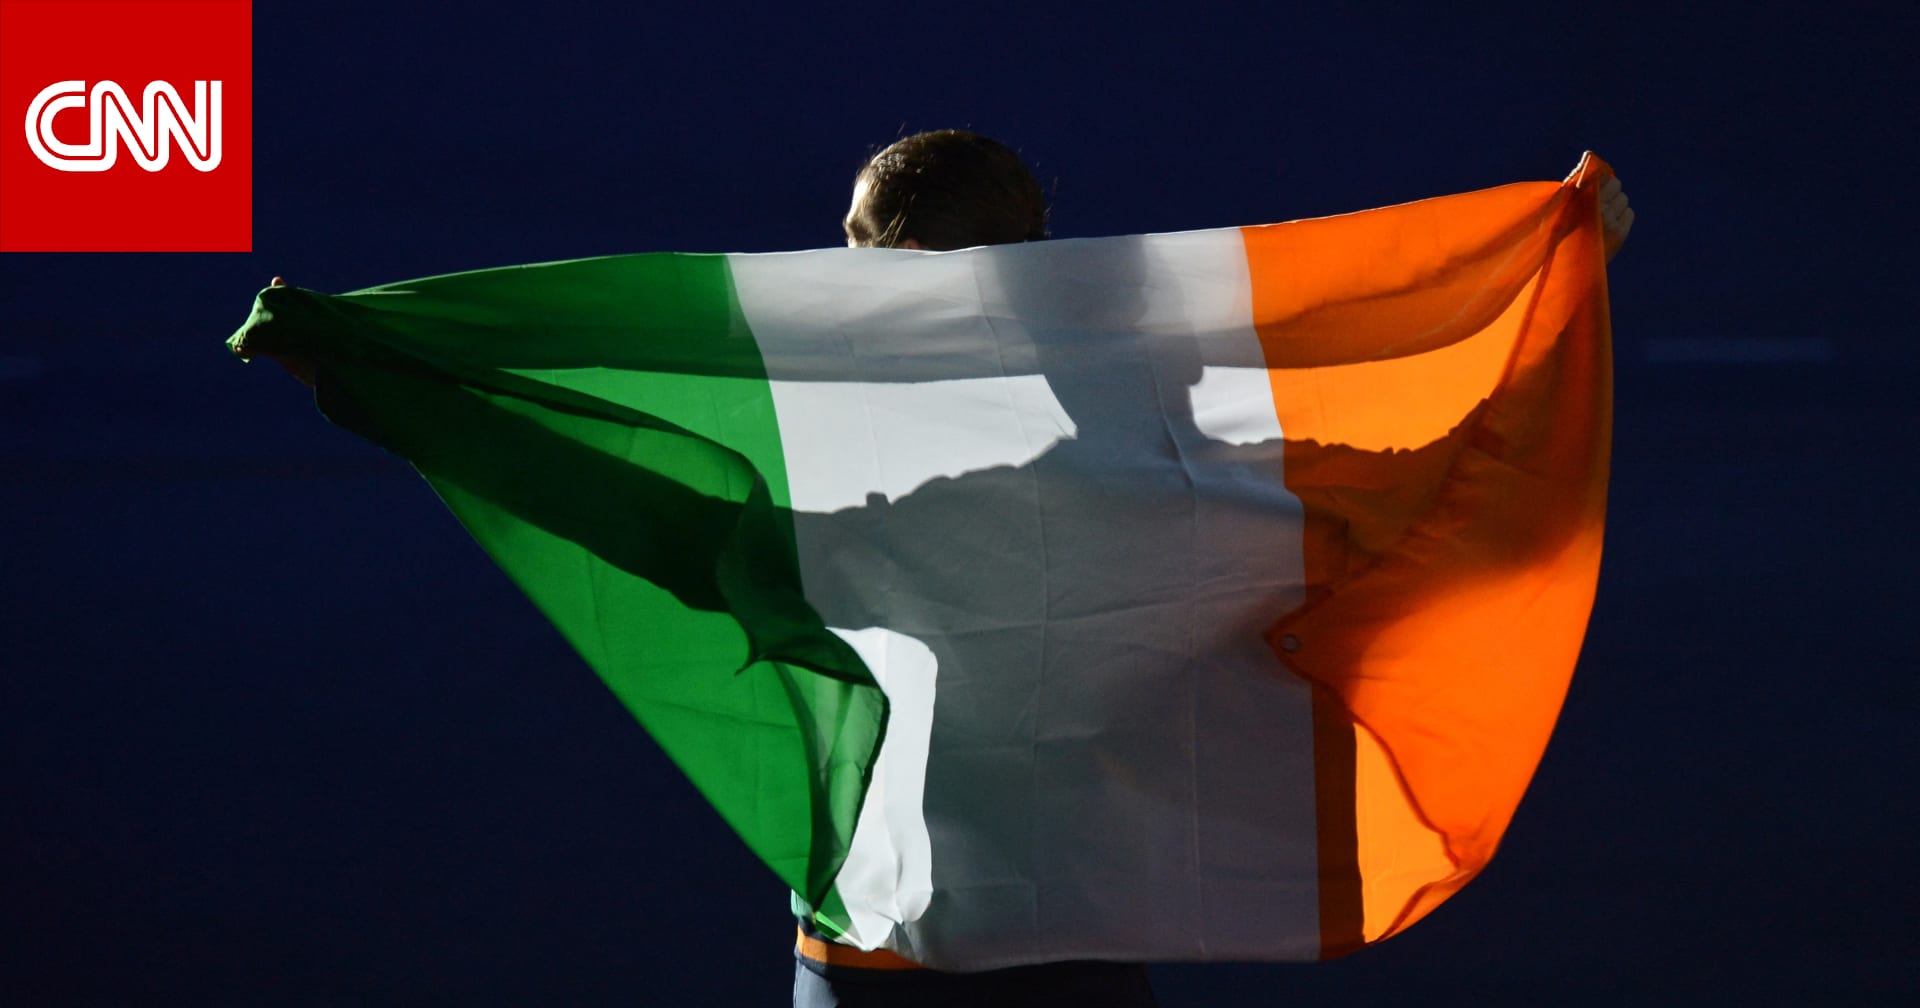 لاعبات أيرلندا يرفضن مصافحة منتخب إسرائيل في مبارة كرة سلة لهذا السبب